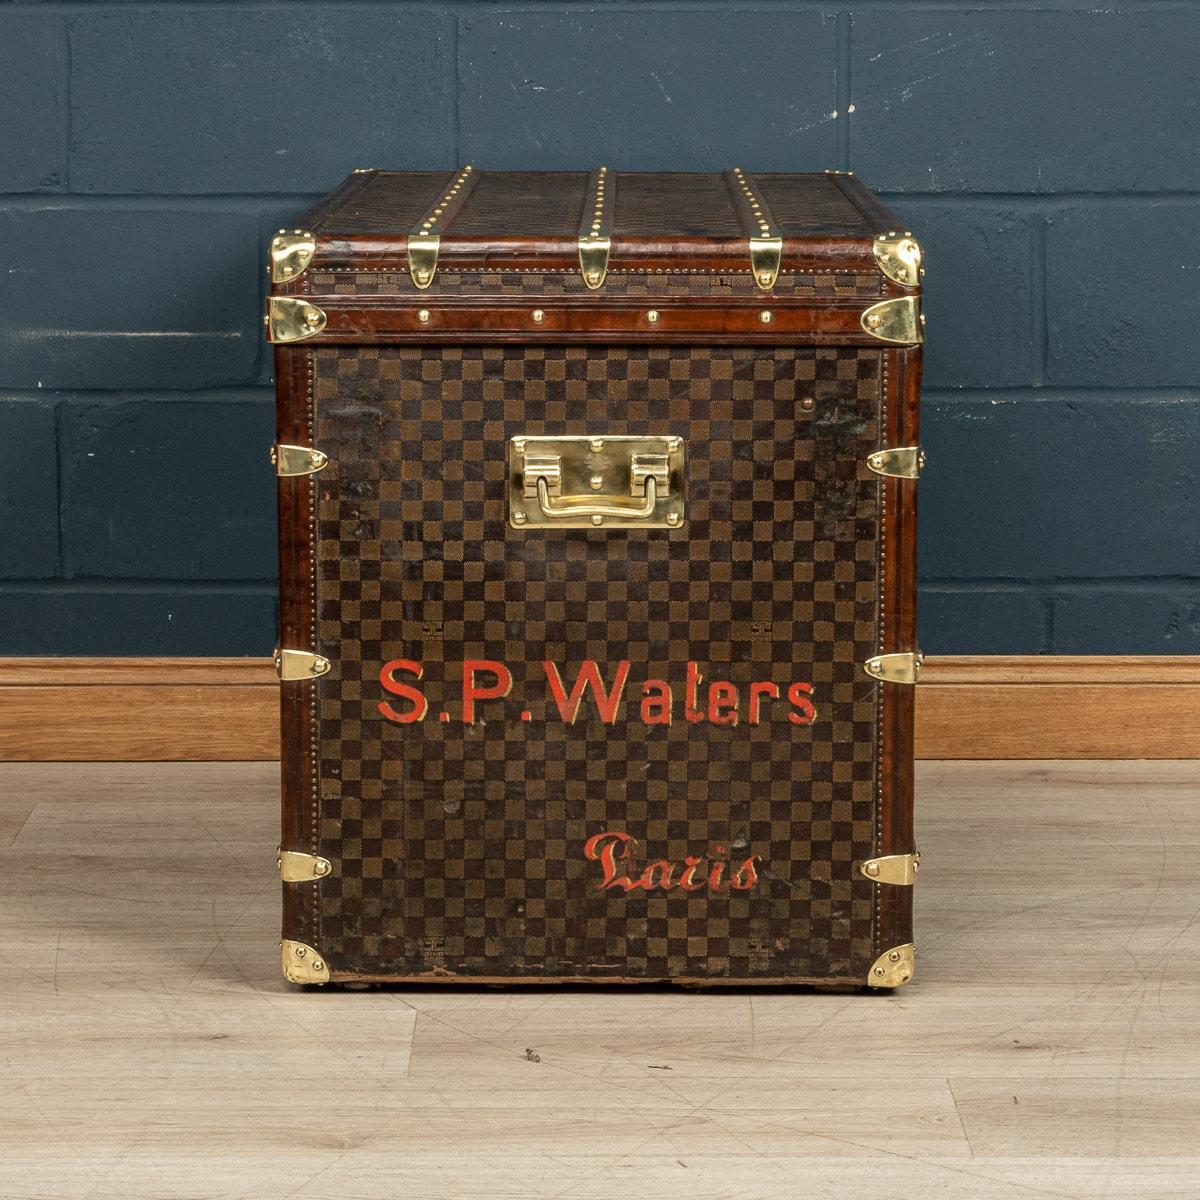 Dieser Koffer ist einer der seltensten Louis Vuitton-Koffer, die angeboten werden. Er ist mit dem weltberühmten Damier-Stoff (Schachbrettmuster) bezogen. Er stammt aus der Zeit um 1900 und ist ein perfektes Beispiel für diese Art von Koffern. Mit